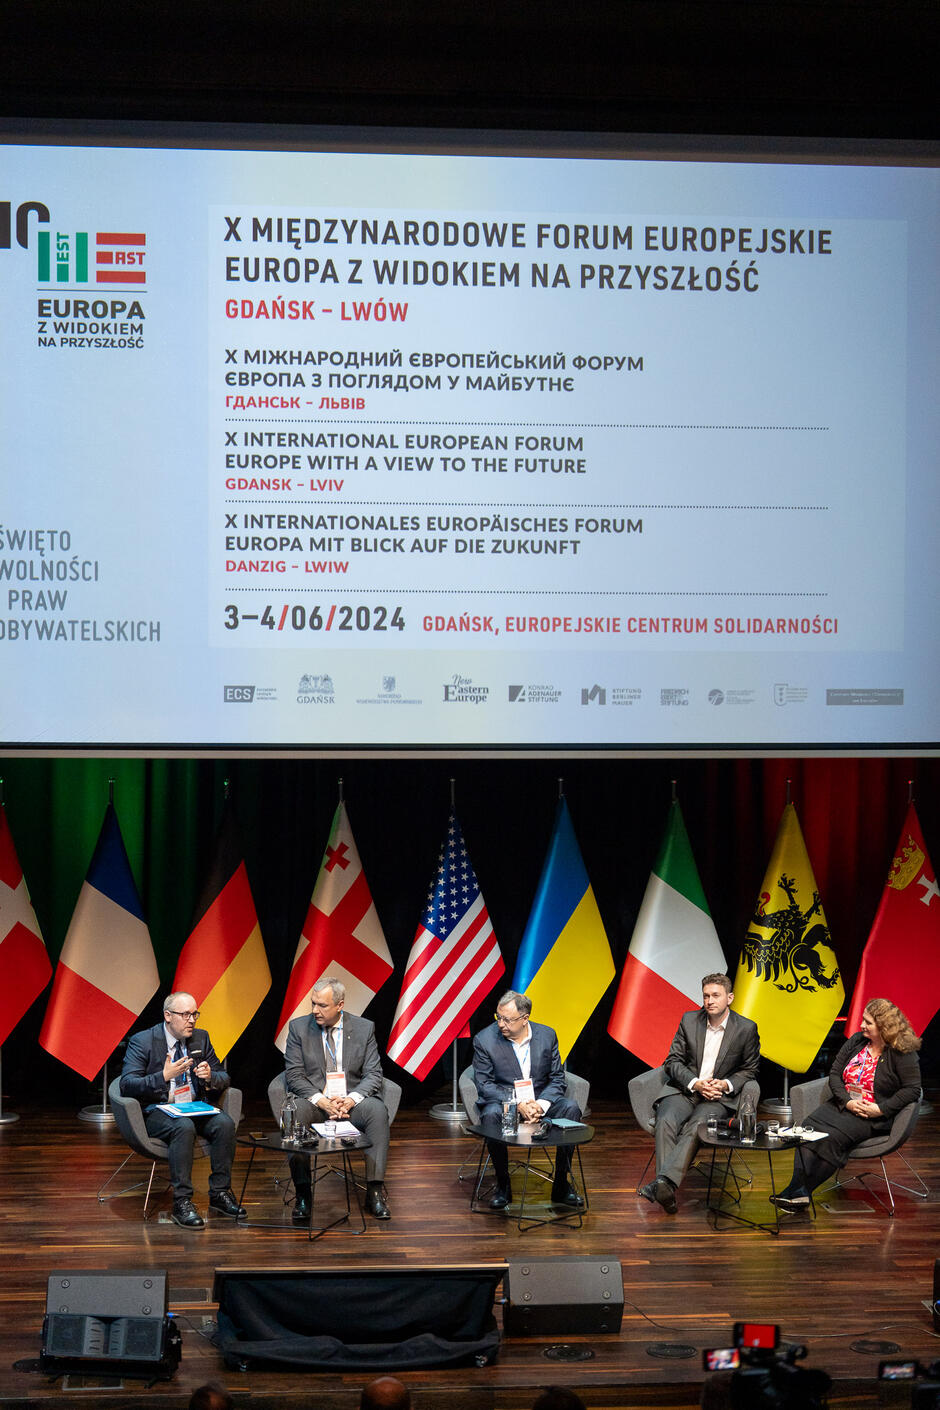 Na zdjęciu widzimy panel dyskusyjny podczas X Międzynarodowego Forum Europejskiego Europa z widokiem na przyszłość  w Gdańsku. W tle znajduje się ekran z informacjami o wydarzeniu oraz flagi różnych państw, a na scenie siedzi pięciu mężczyzn i jedna kobieta, uczestniczący w debacie